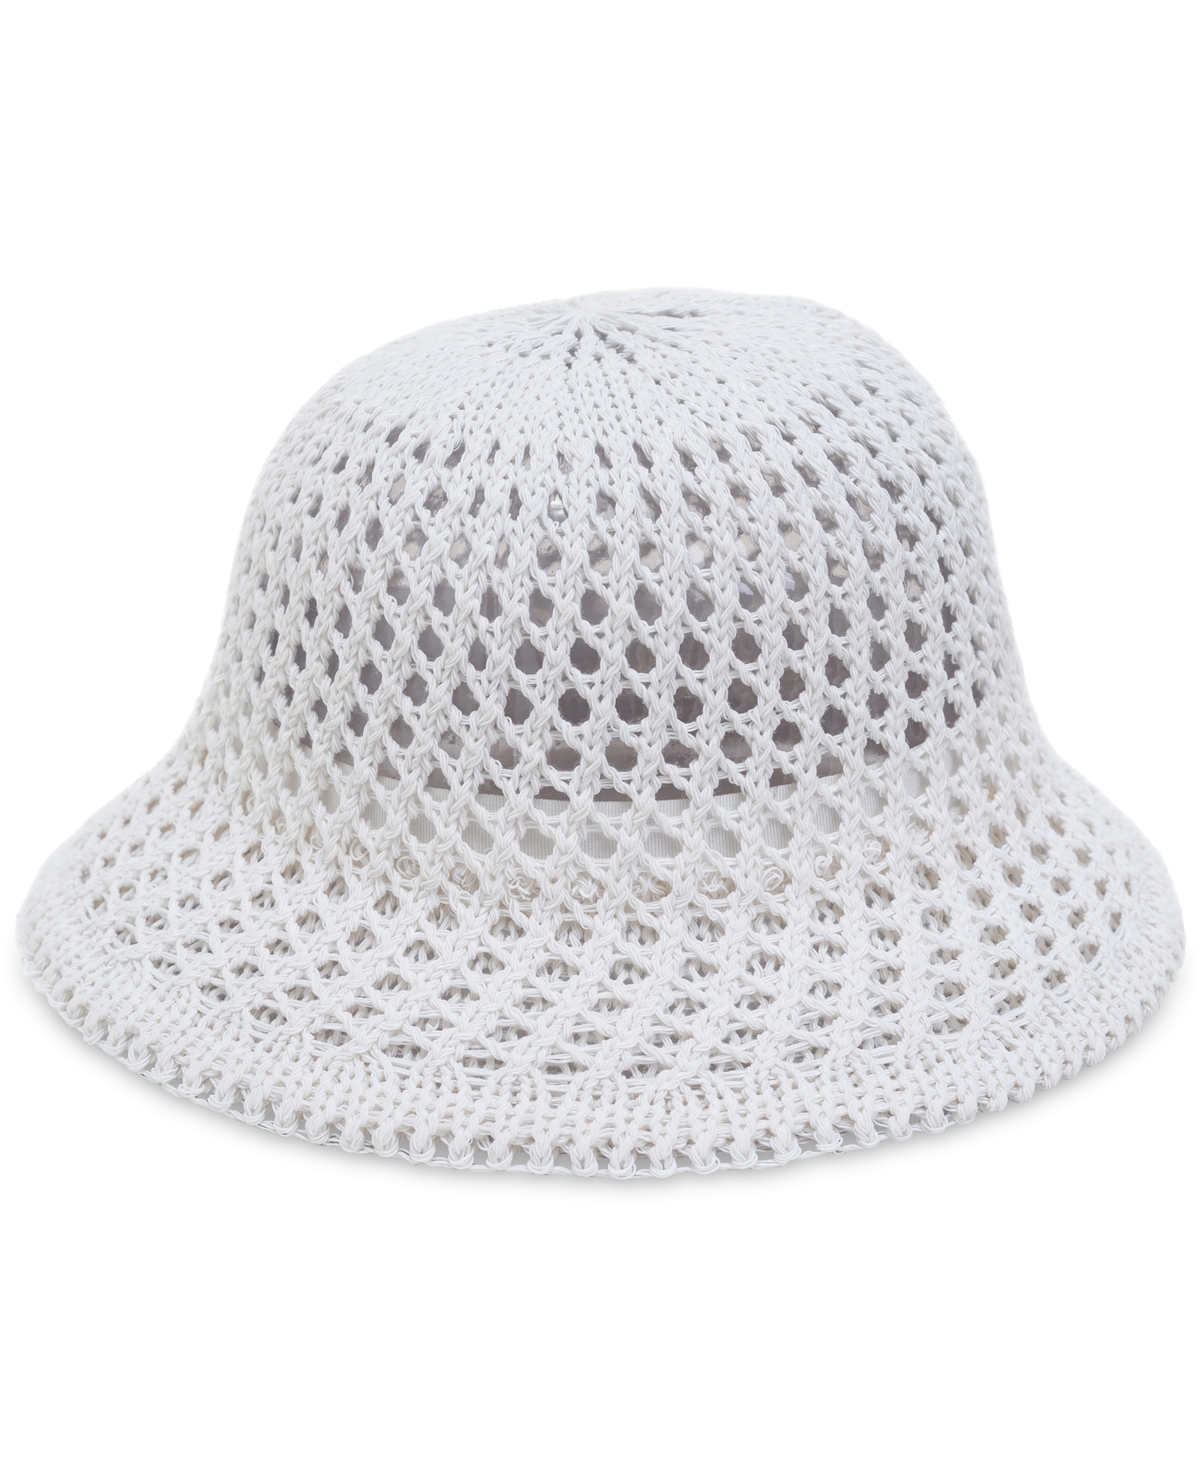 Women's Open-Knit Crochet Cloche Hat, Created for Macy's - Navy